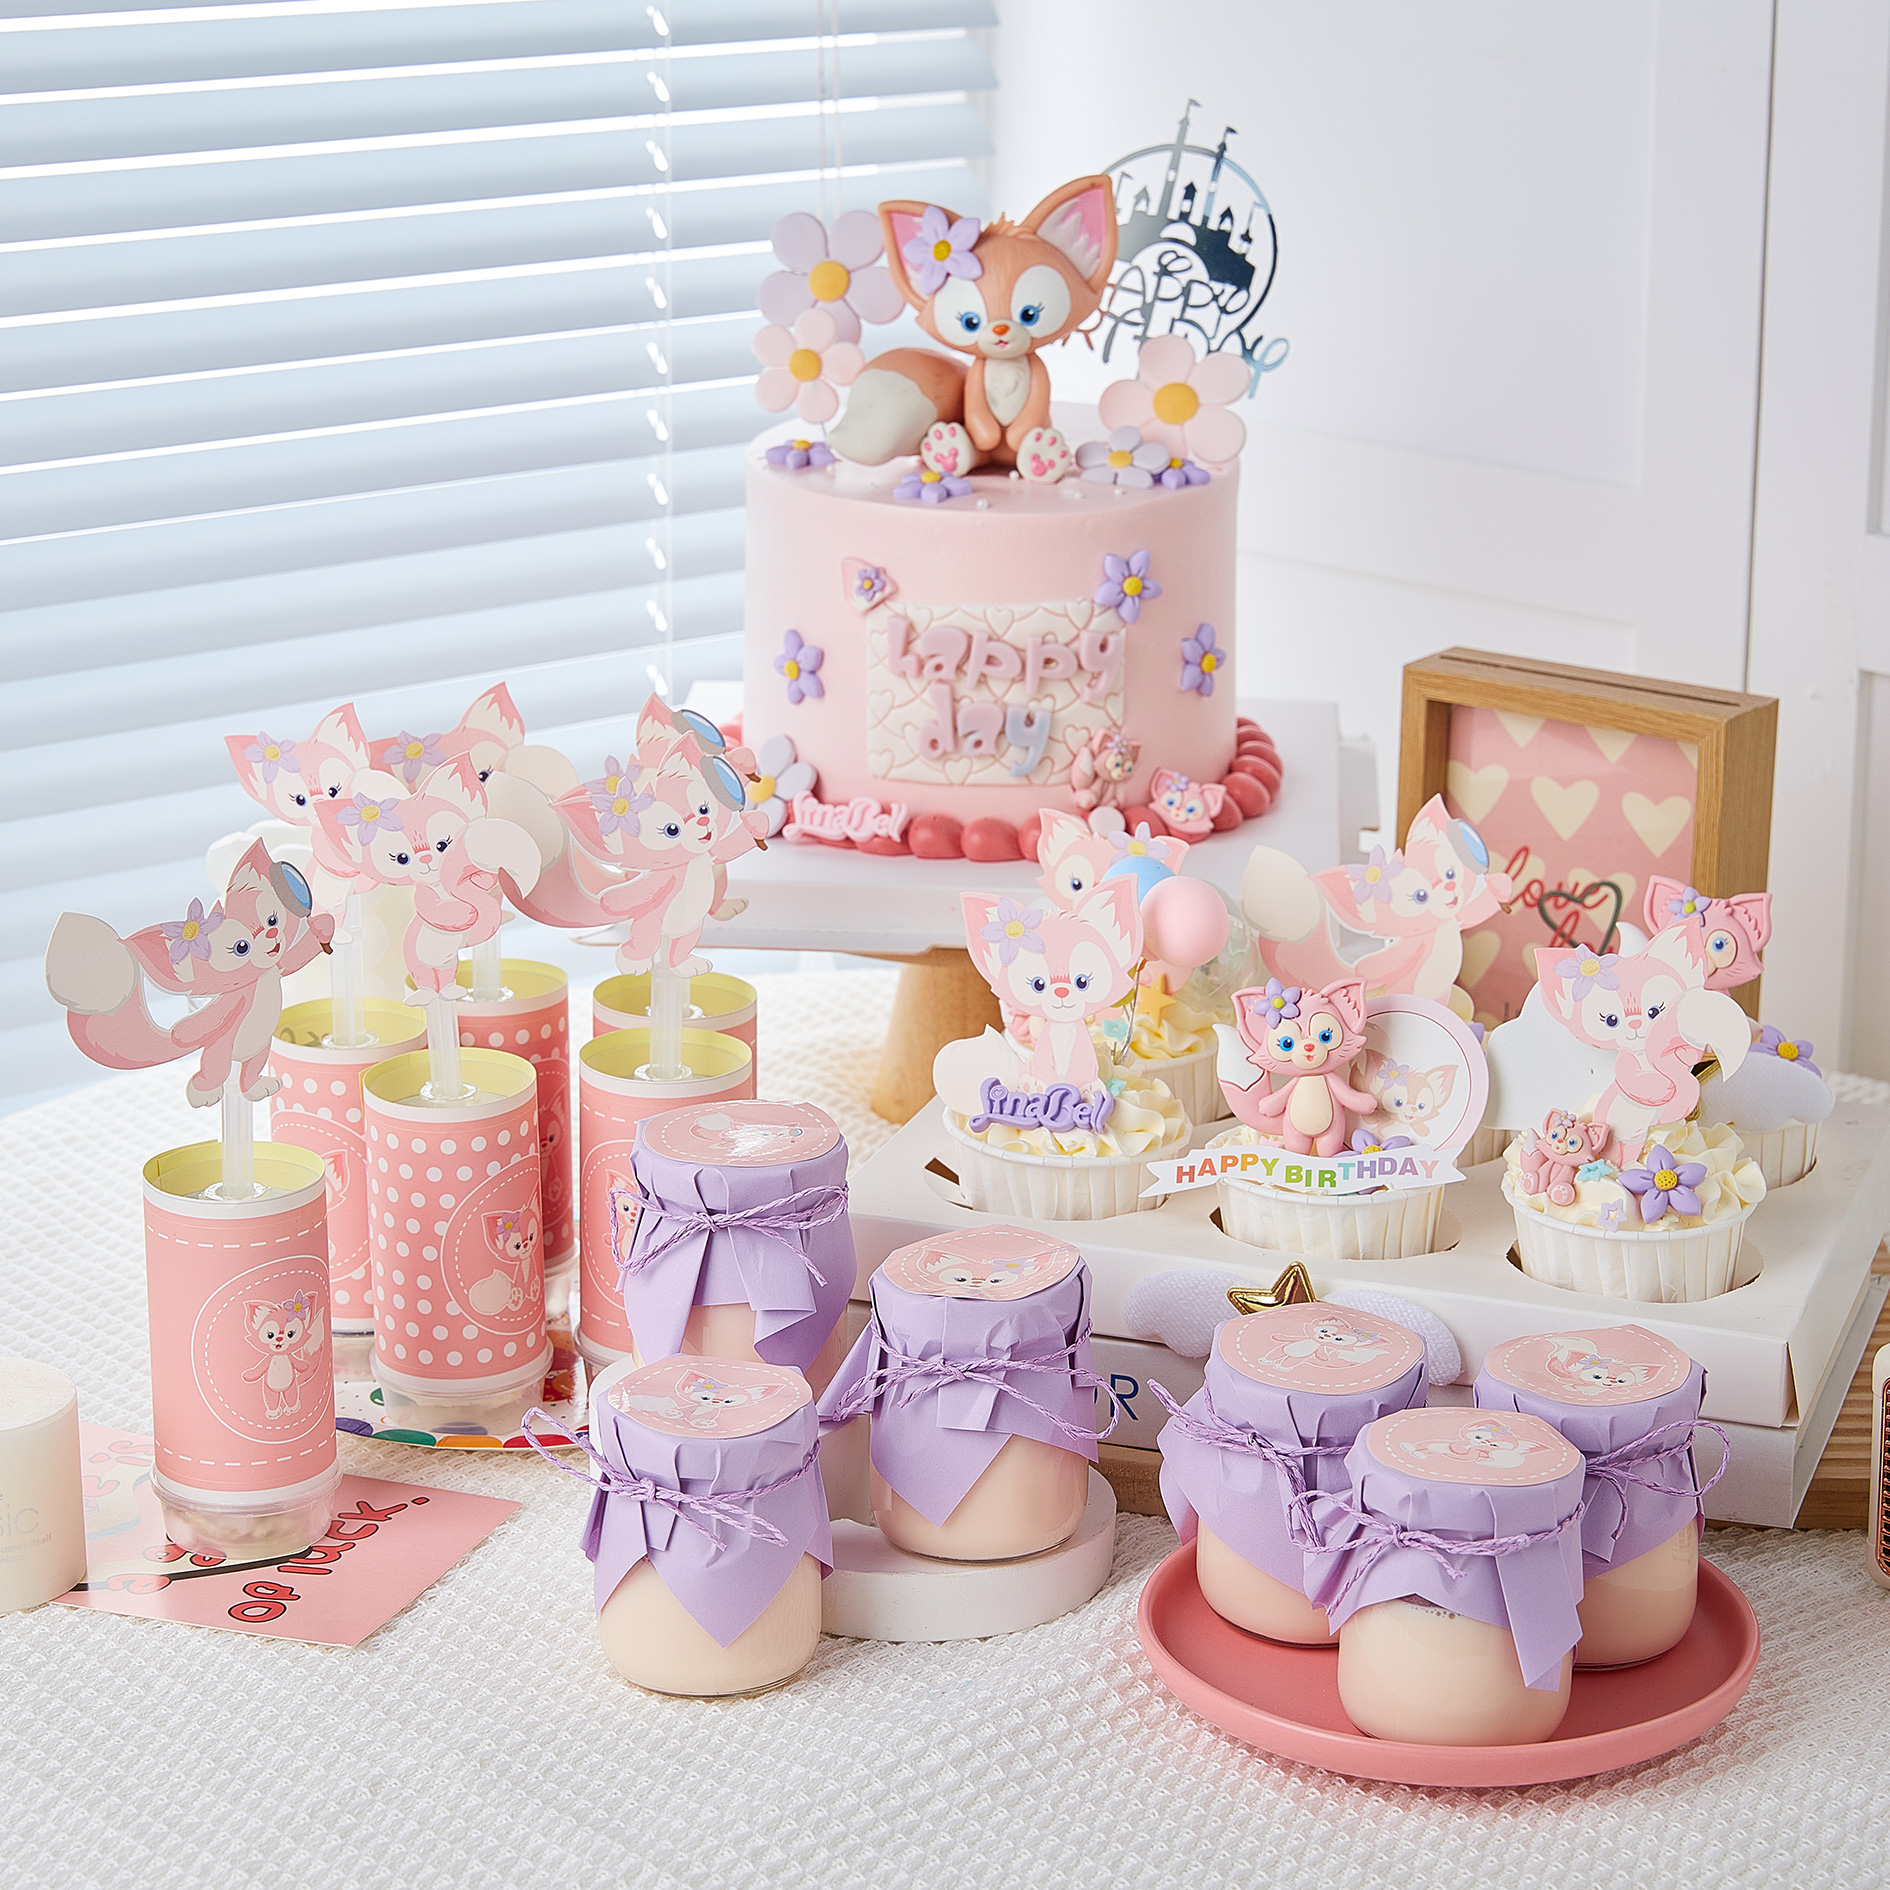 小狐狸甜品台蛋糕装饰摆件女孩生日派对玲娜主题派对川沙妲己插牌